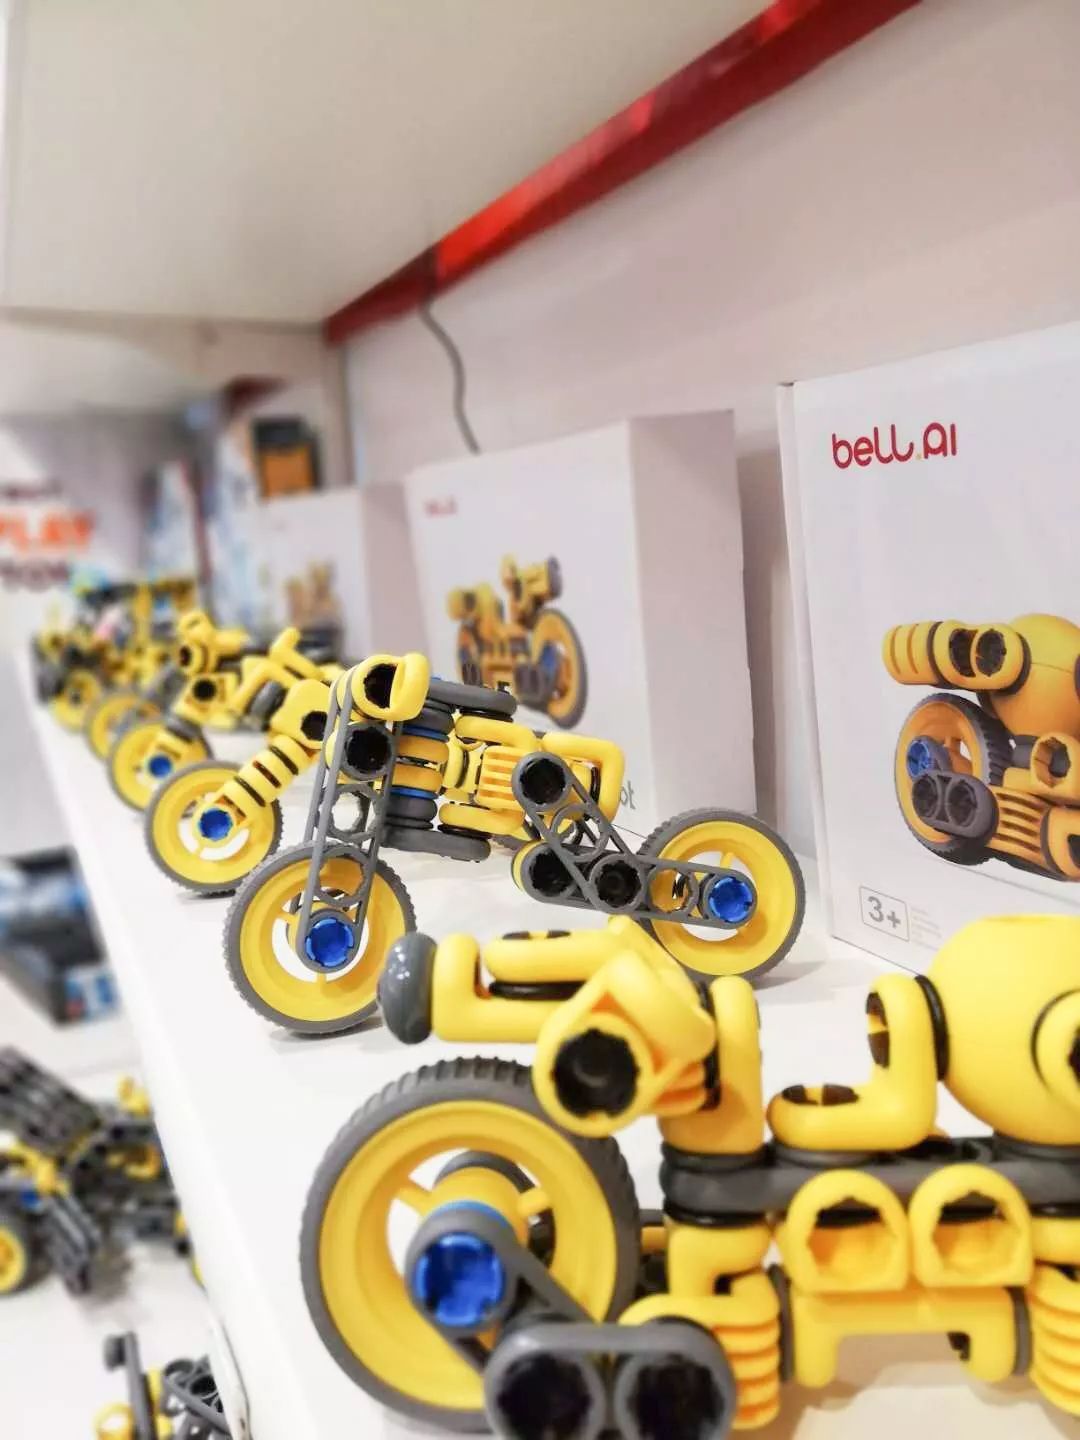 英国威廉希尔中文网在2019香港玩具展上展示的Mabot机器人摩托车造型